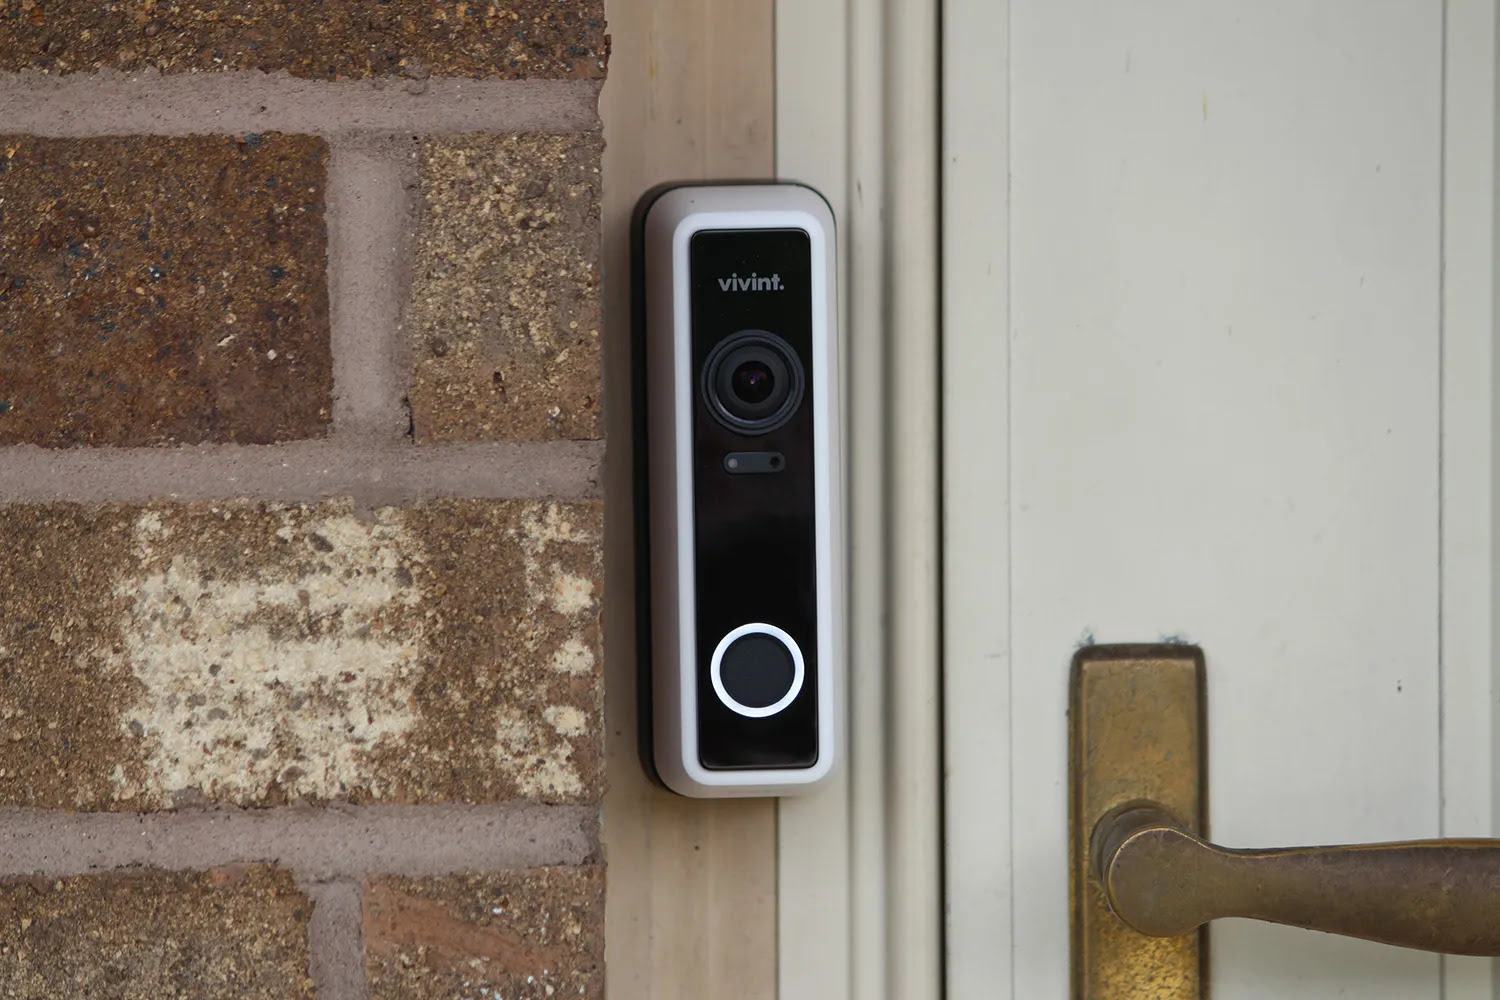 How To Change Vivint Doorbell Sound